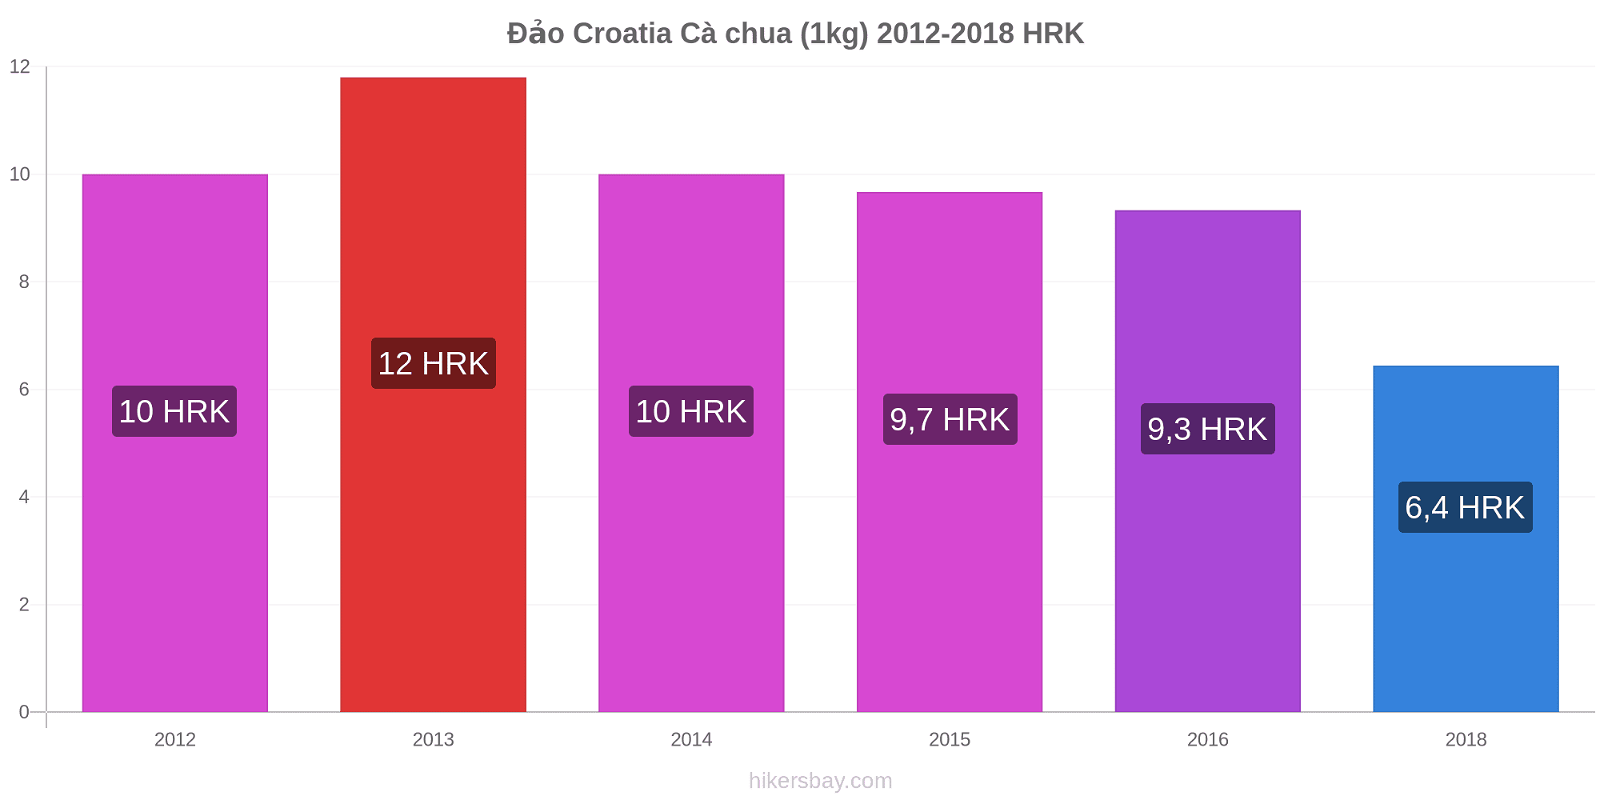 Đảo Croatia thay đổi giá Cà chua (1kg) hikersbay.com